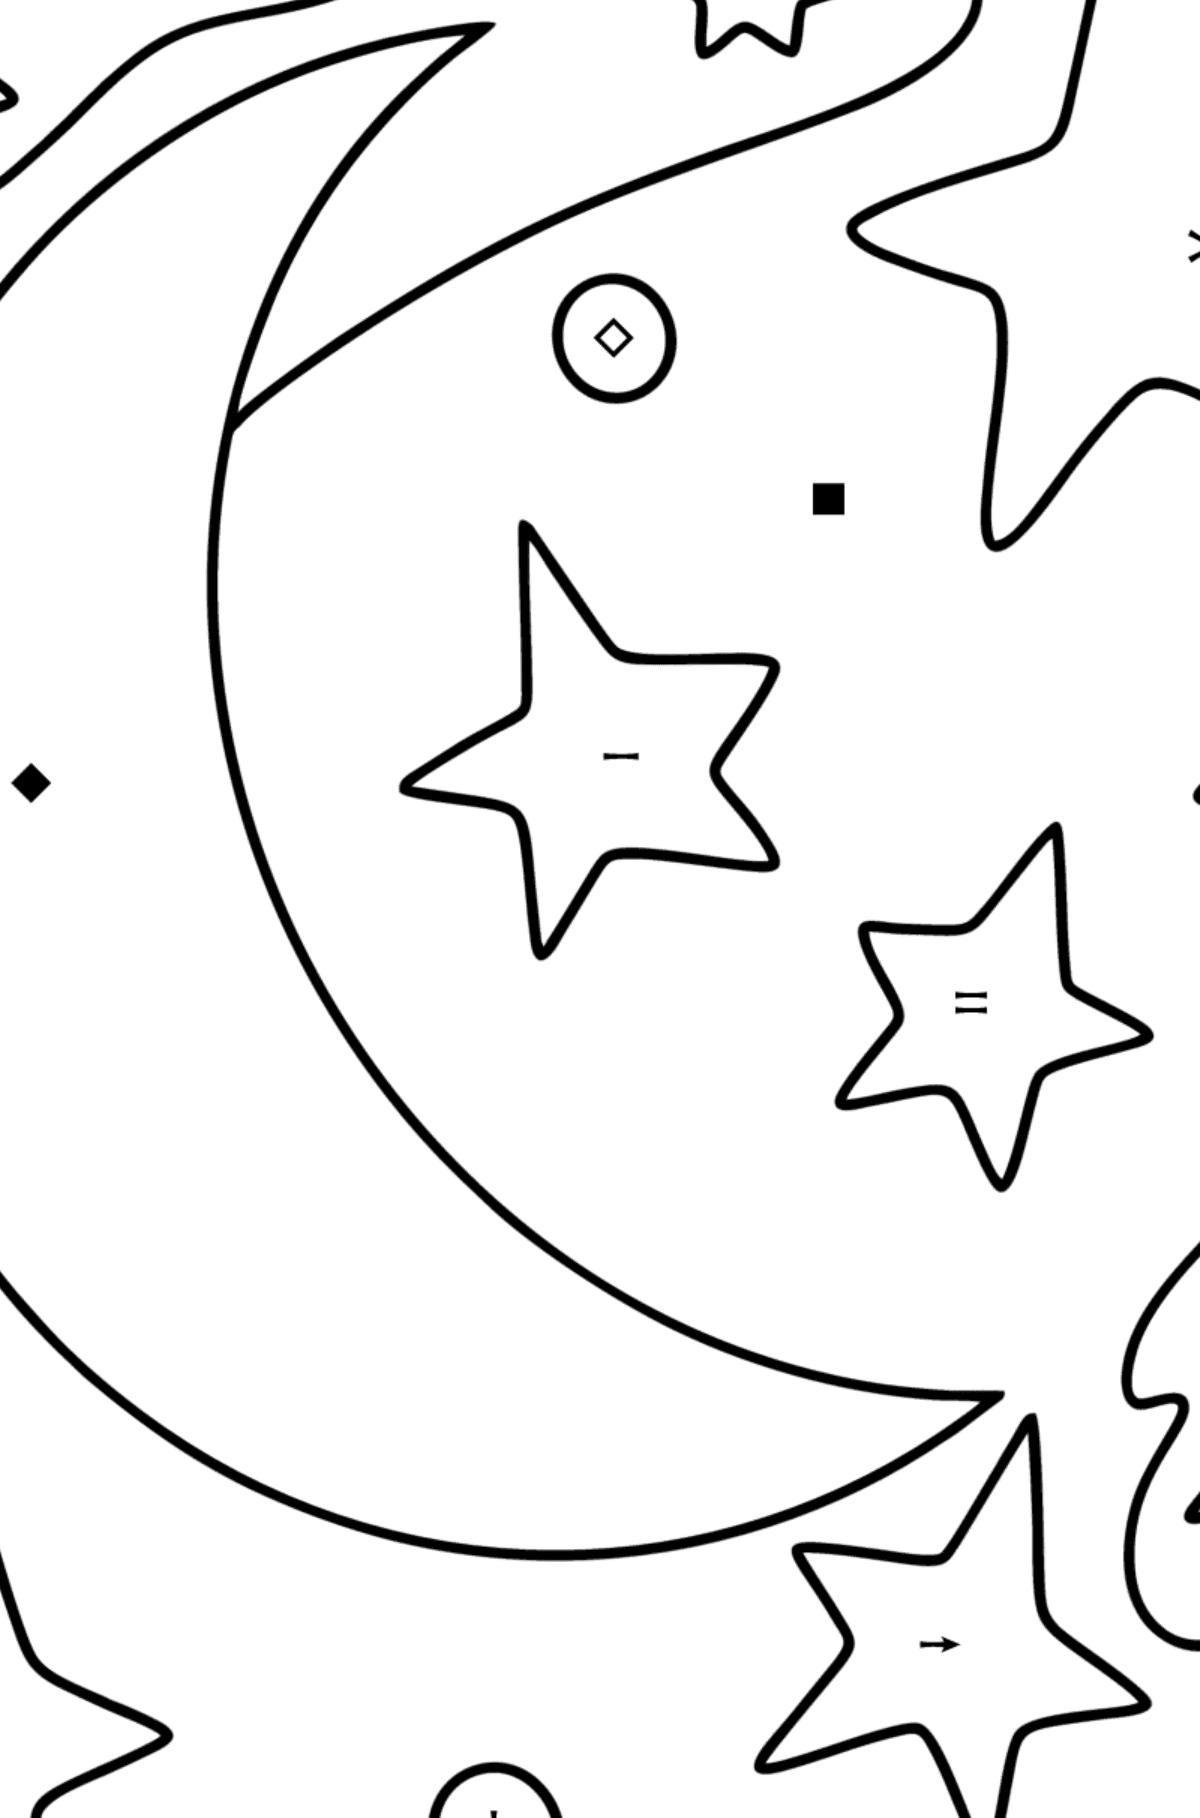 Kolorowanka księżyc i gwiazdy - Kolorowanie według symboli dla dzieci